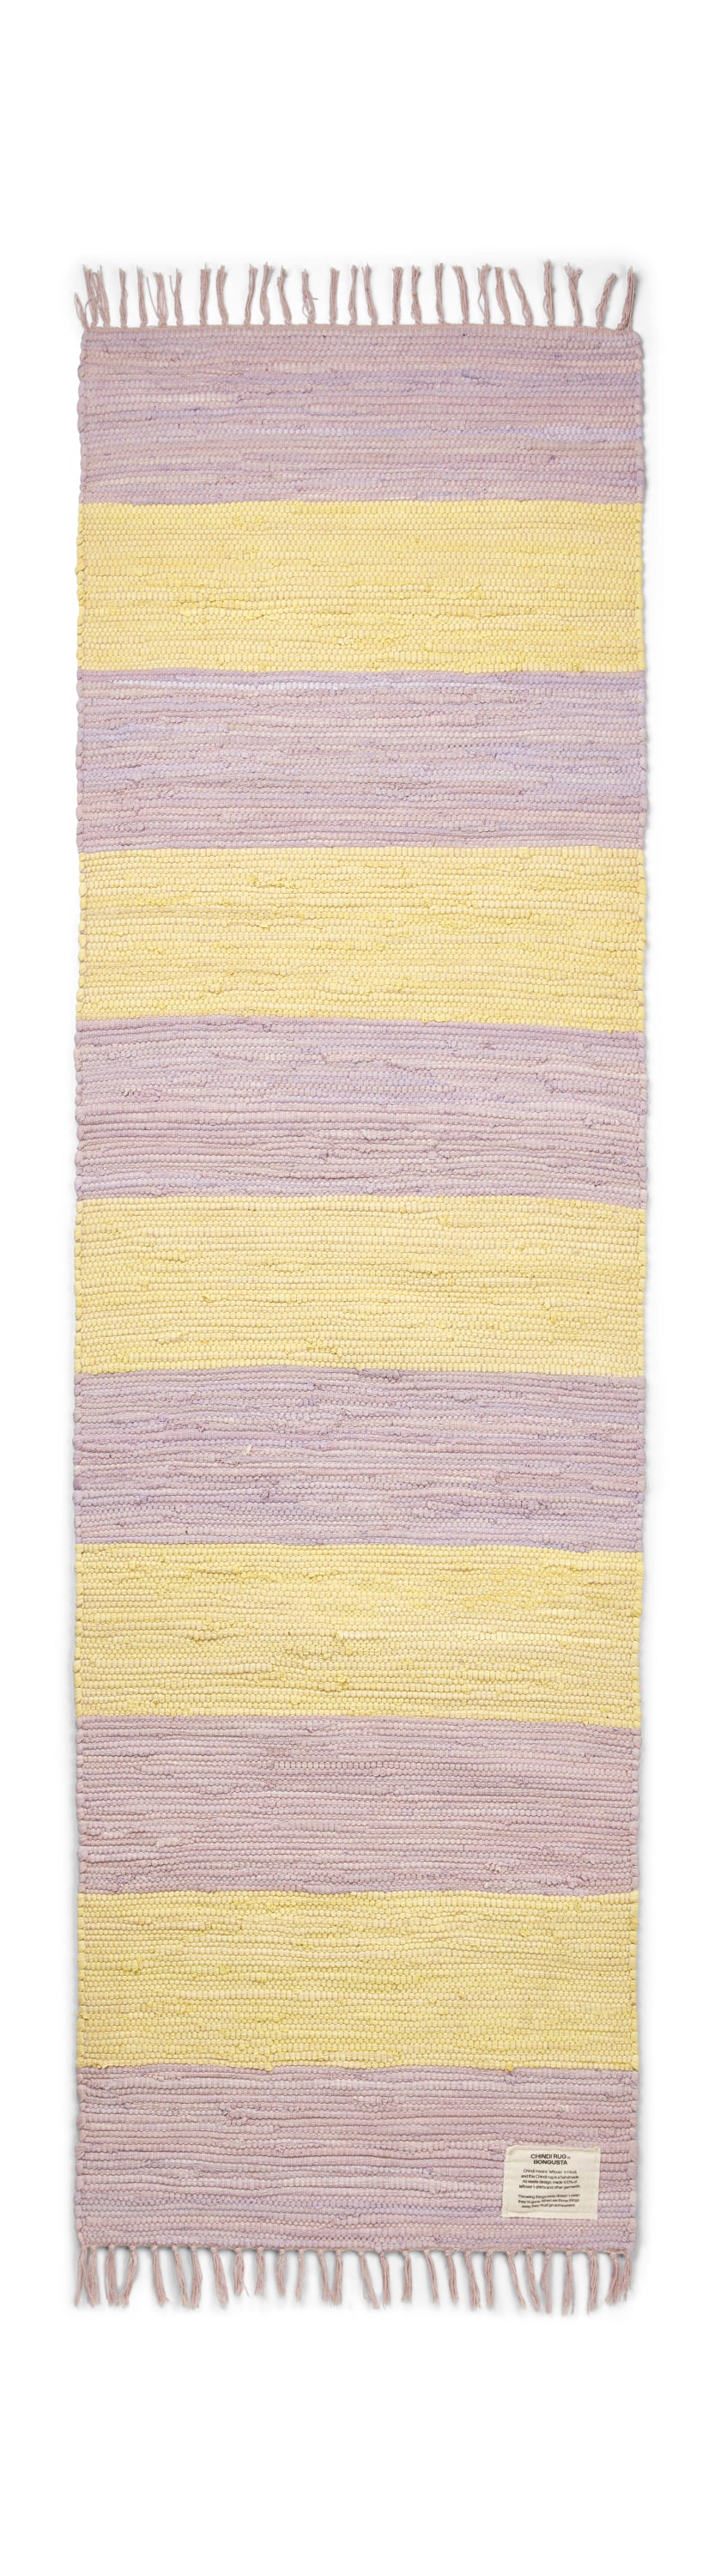 CHINDI RUG tæppe 60x200 cm, lilac & yellow